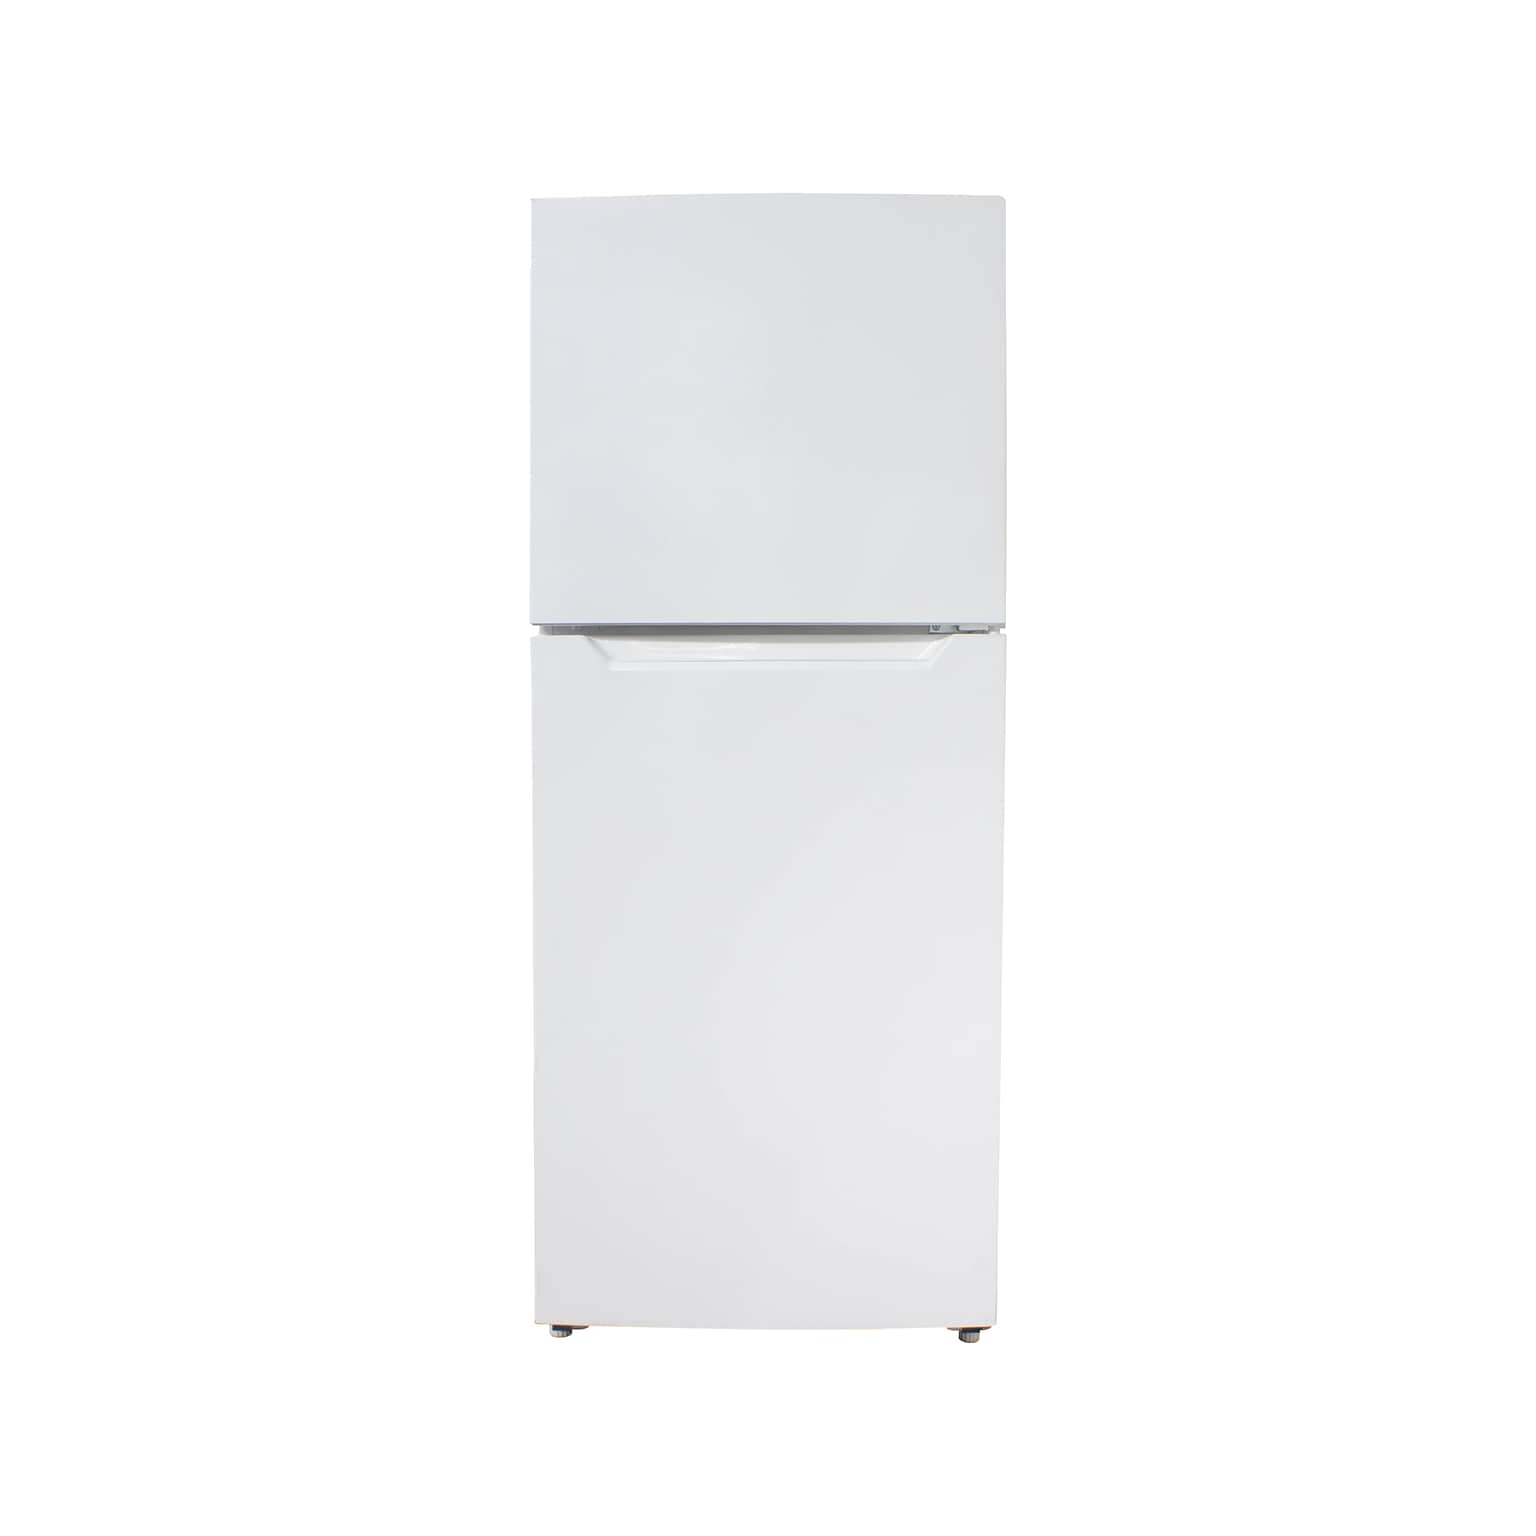 Danby 12 Cu. Ft. Refrigerator w/Freezer, White (DFF116B1WDBR)